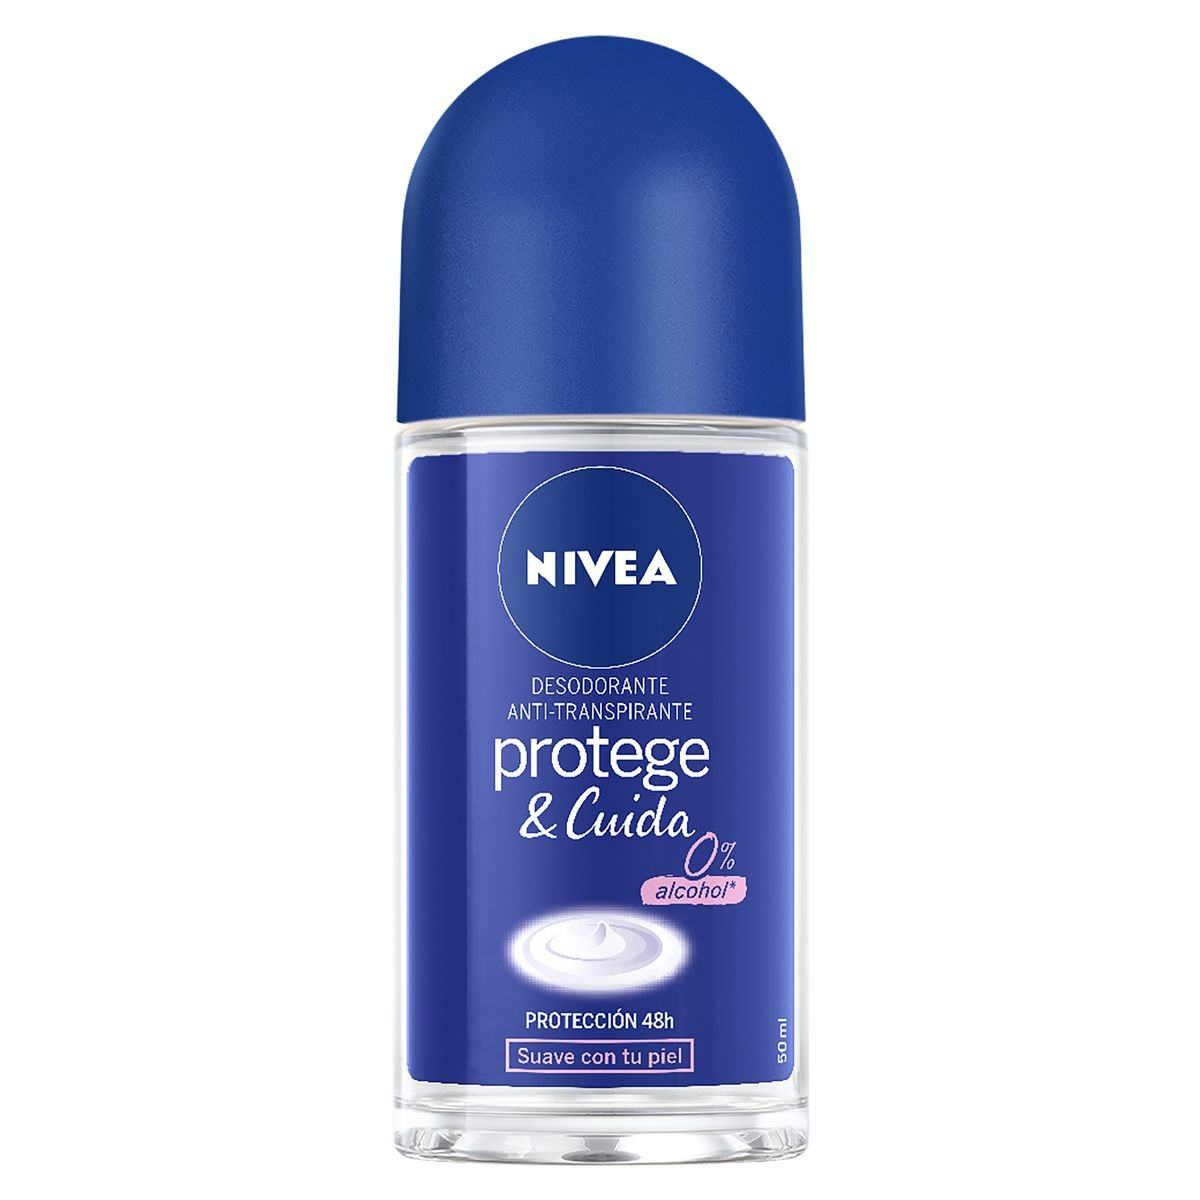 Desodorante protege y cuida NIVEA roll on 50 ml